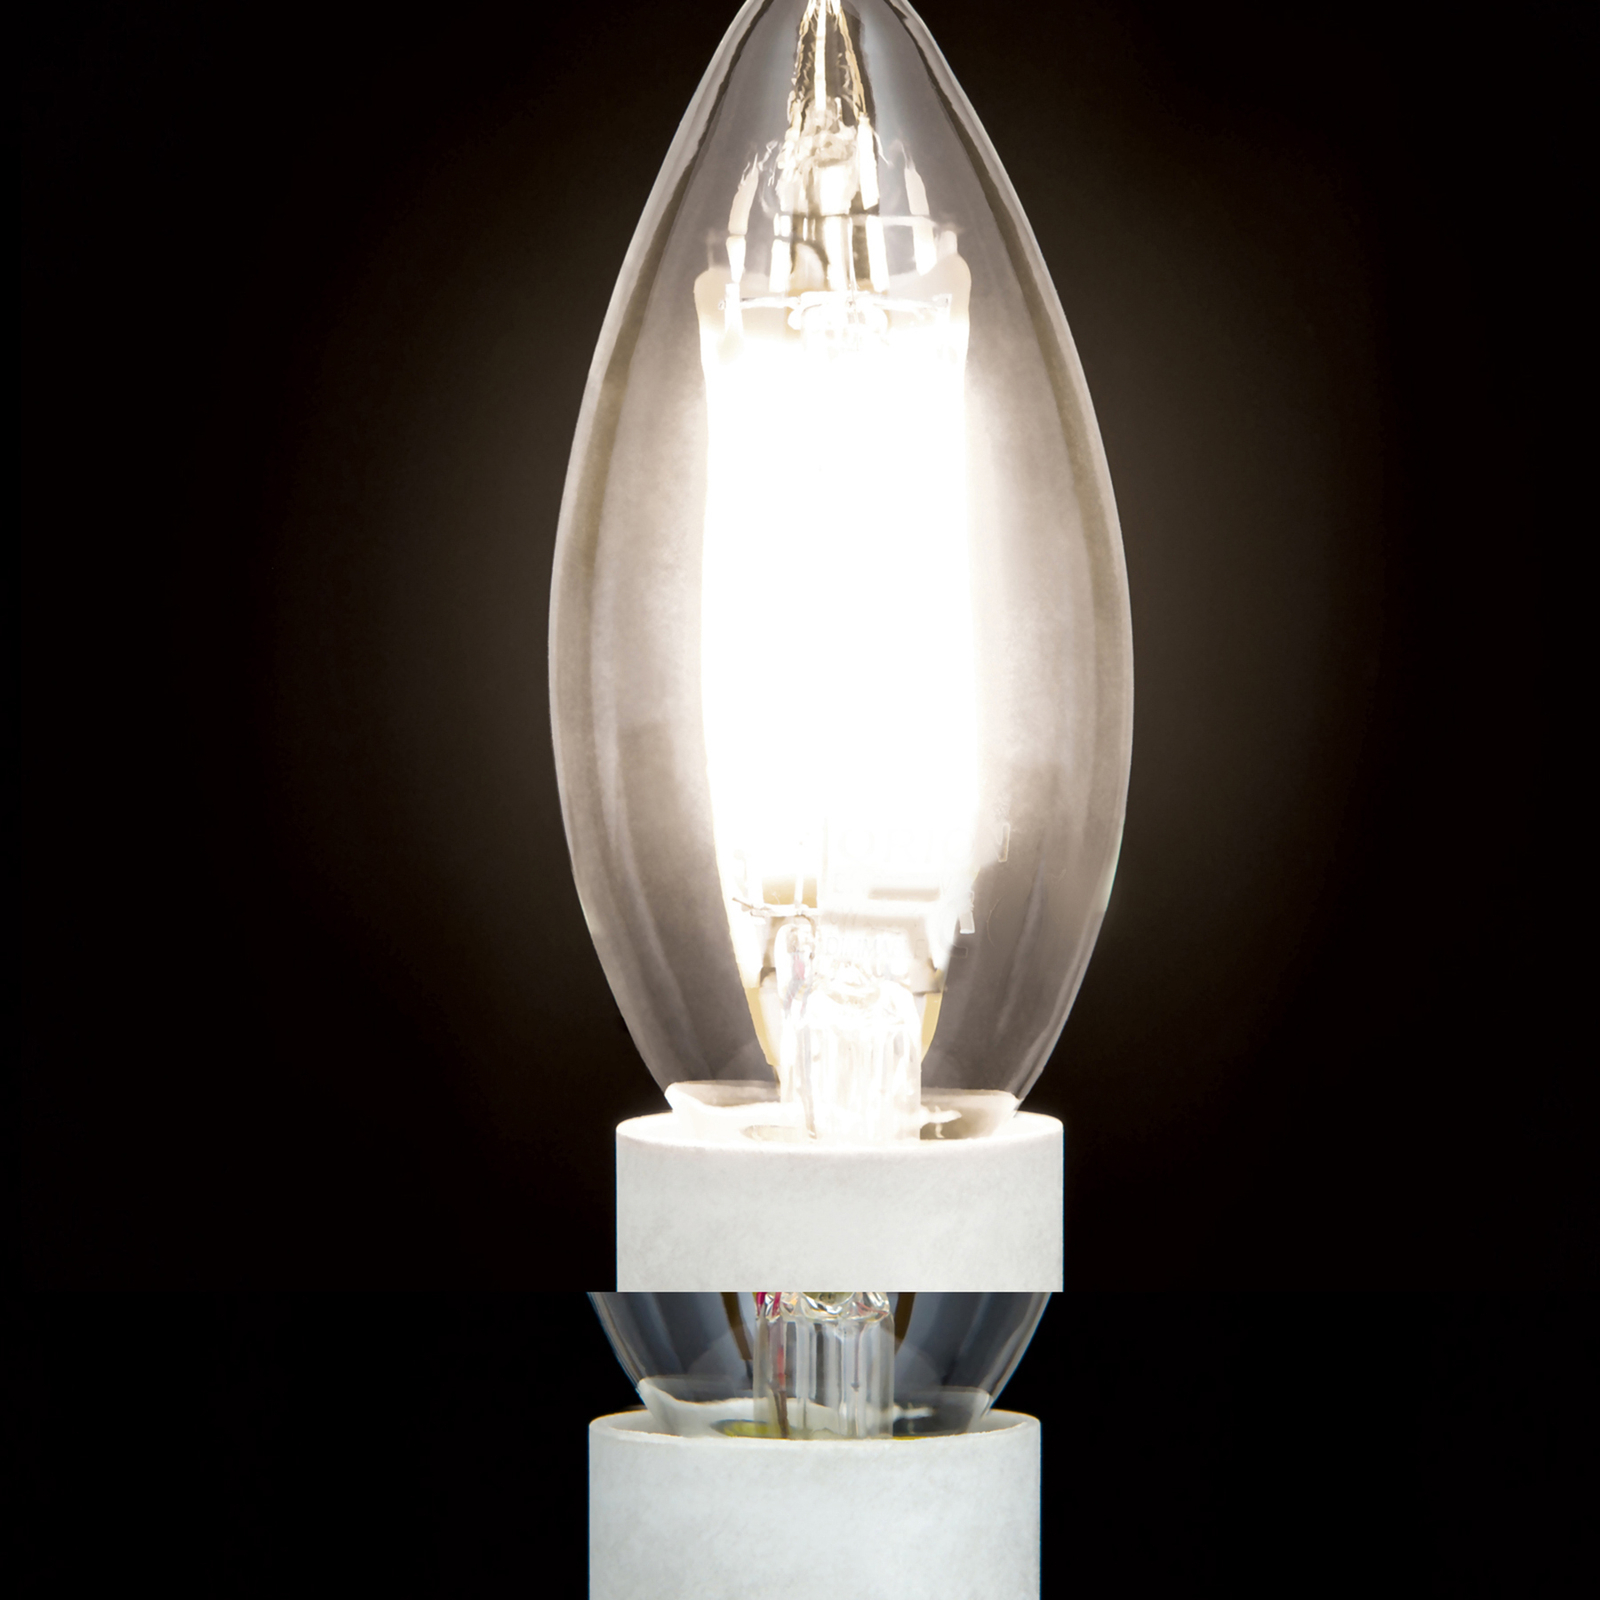 LED candela E14 5W filamenti trasparente 827 dimm